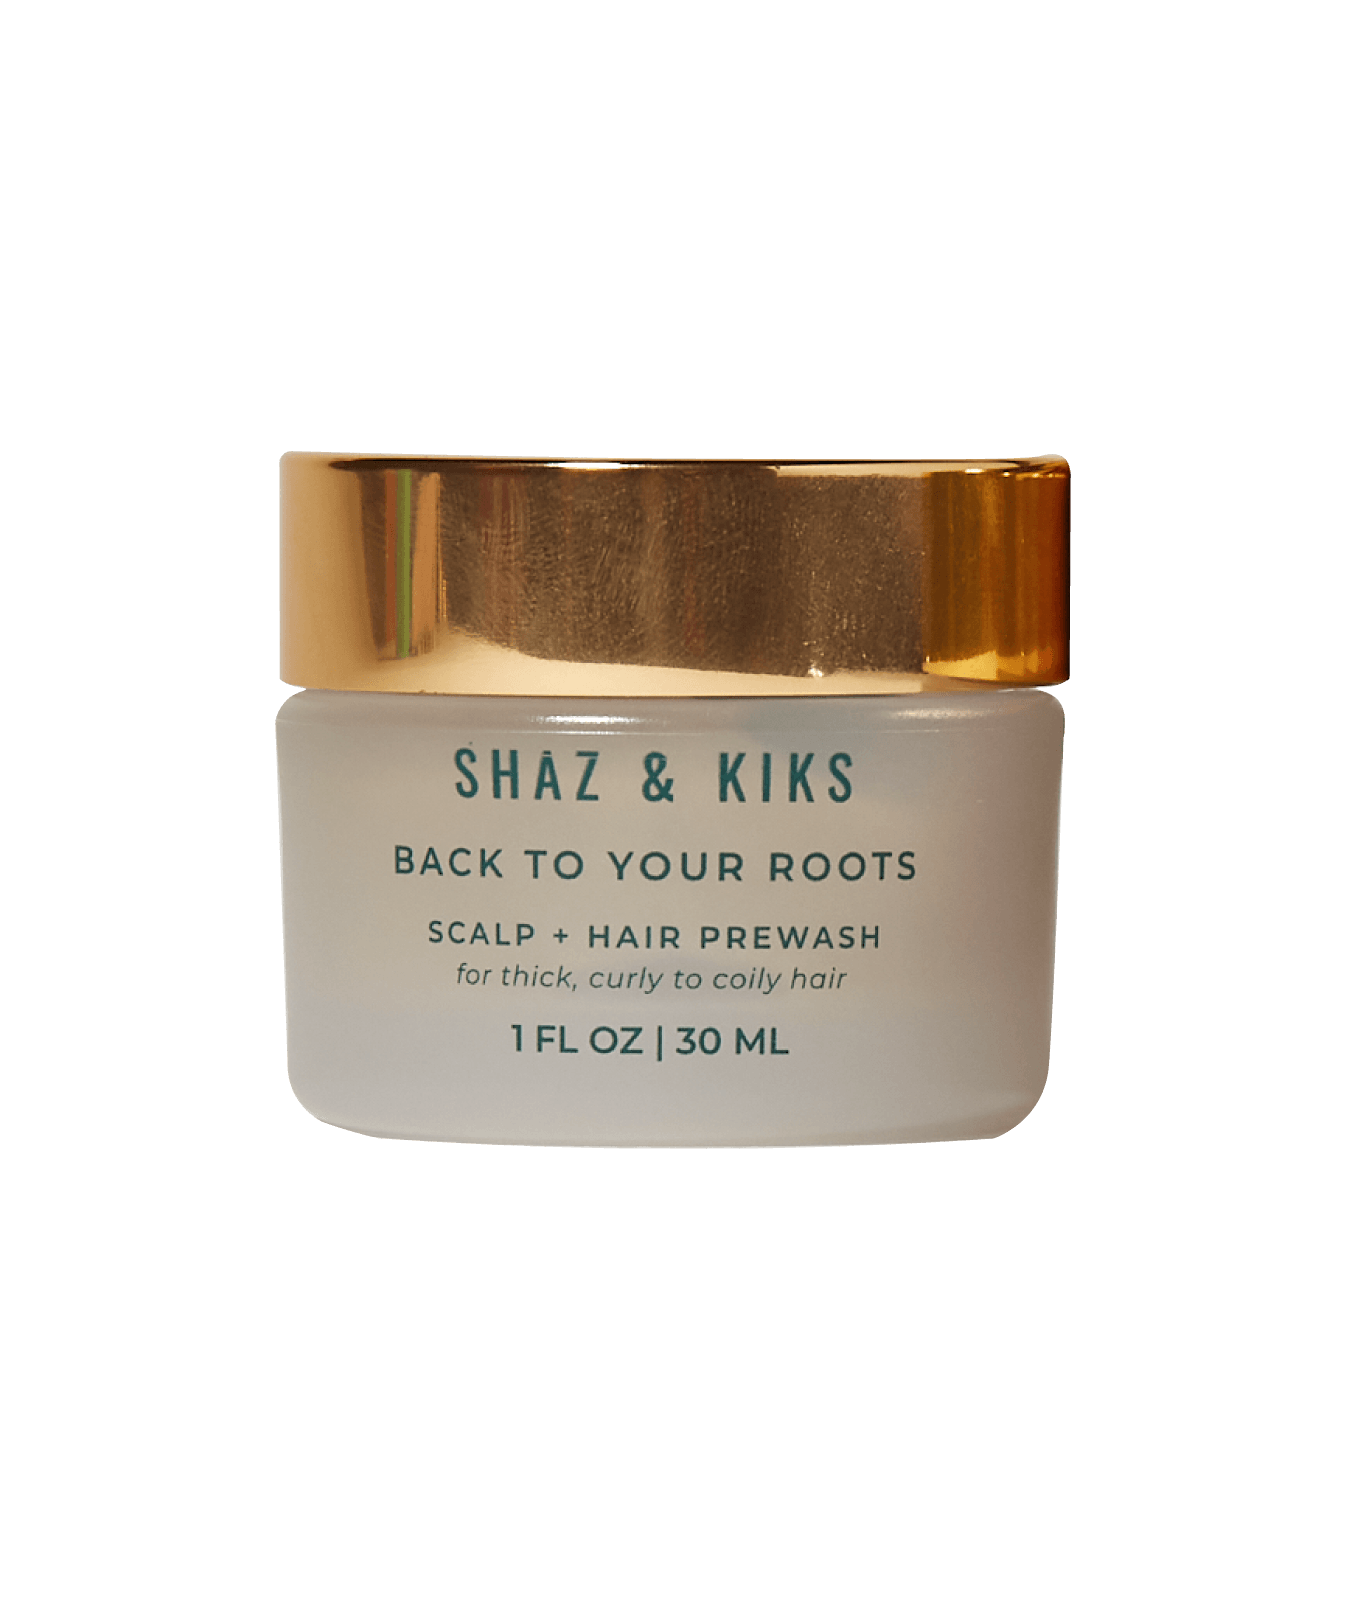 200 pts Shaz + Kiks Mini Scalp + Hair Prewash for Curly Hair - rewards